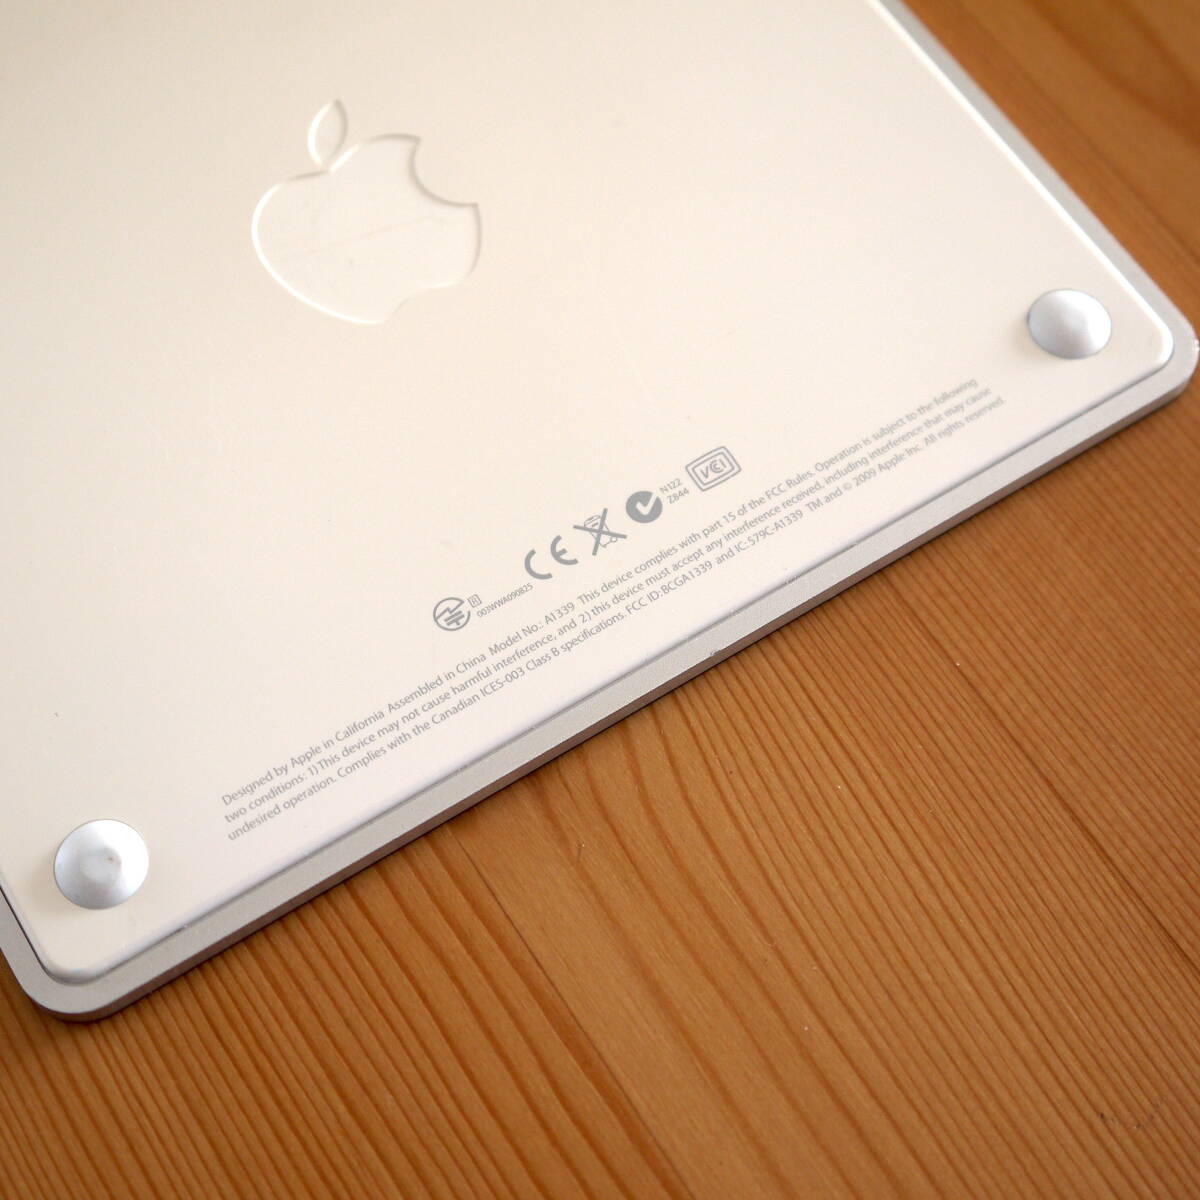 Apple Magic Trackpad　アップル マジック トラックパッド　アップル純正 iMac用〈 A1339 〉美品_画像7